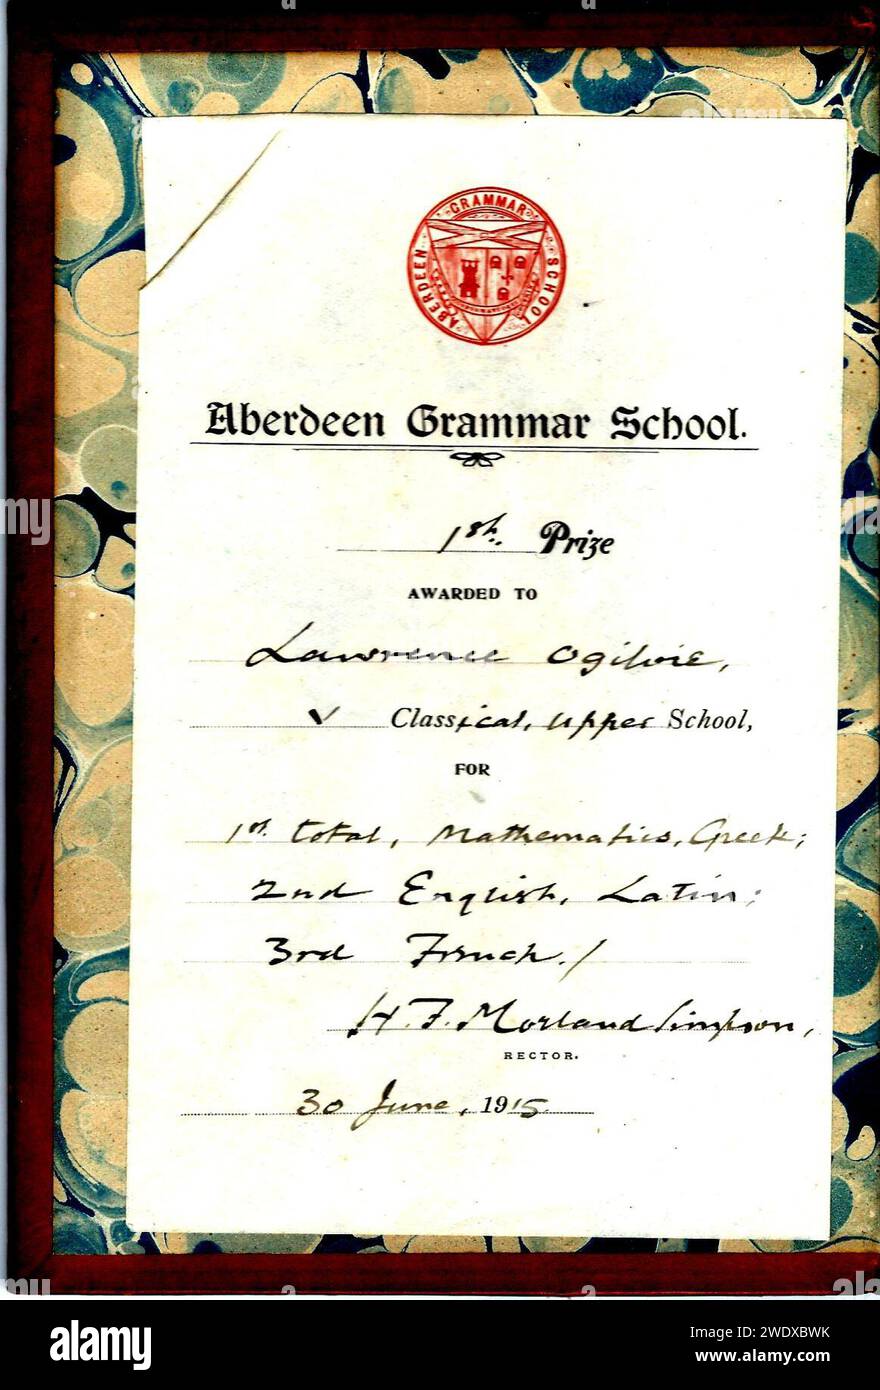 Aberdeen Grammar School 1st prize 1915. Stock Photo